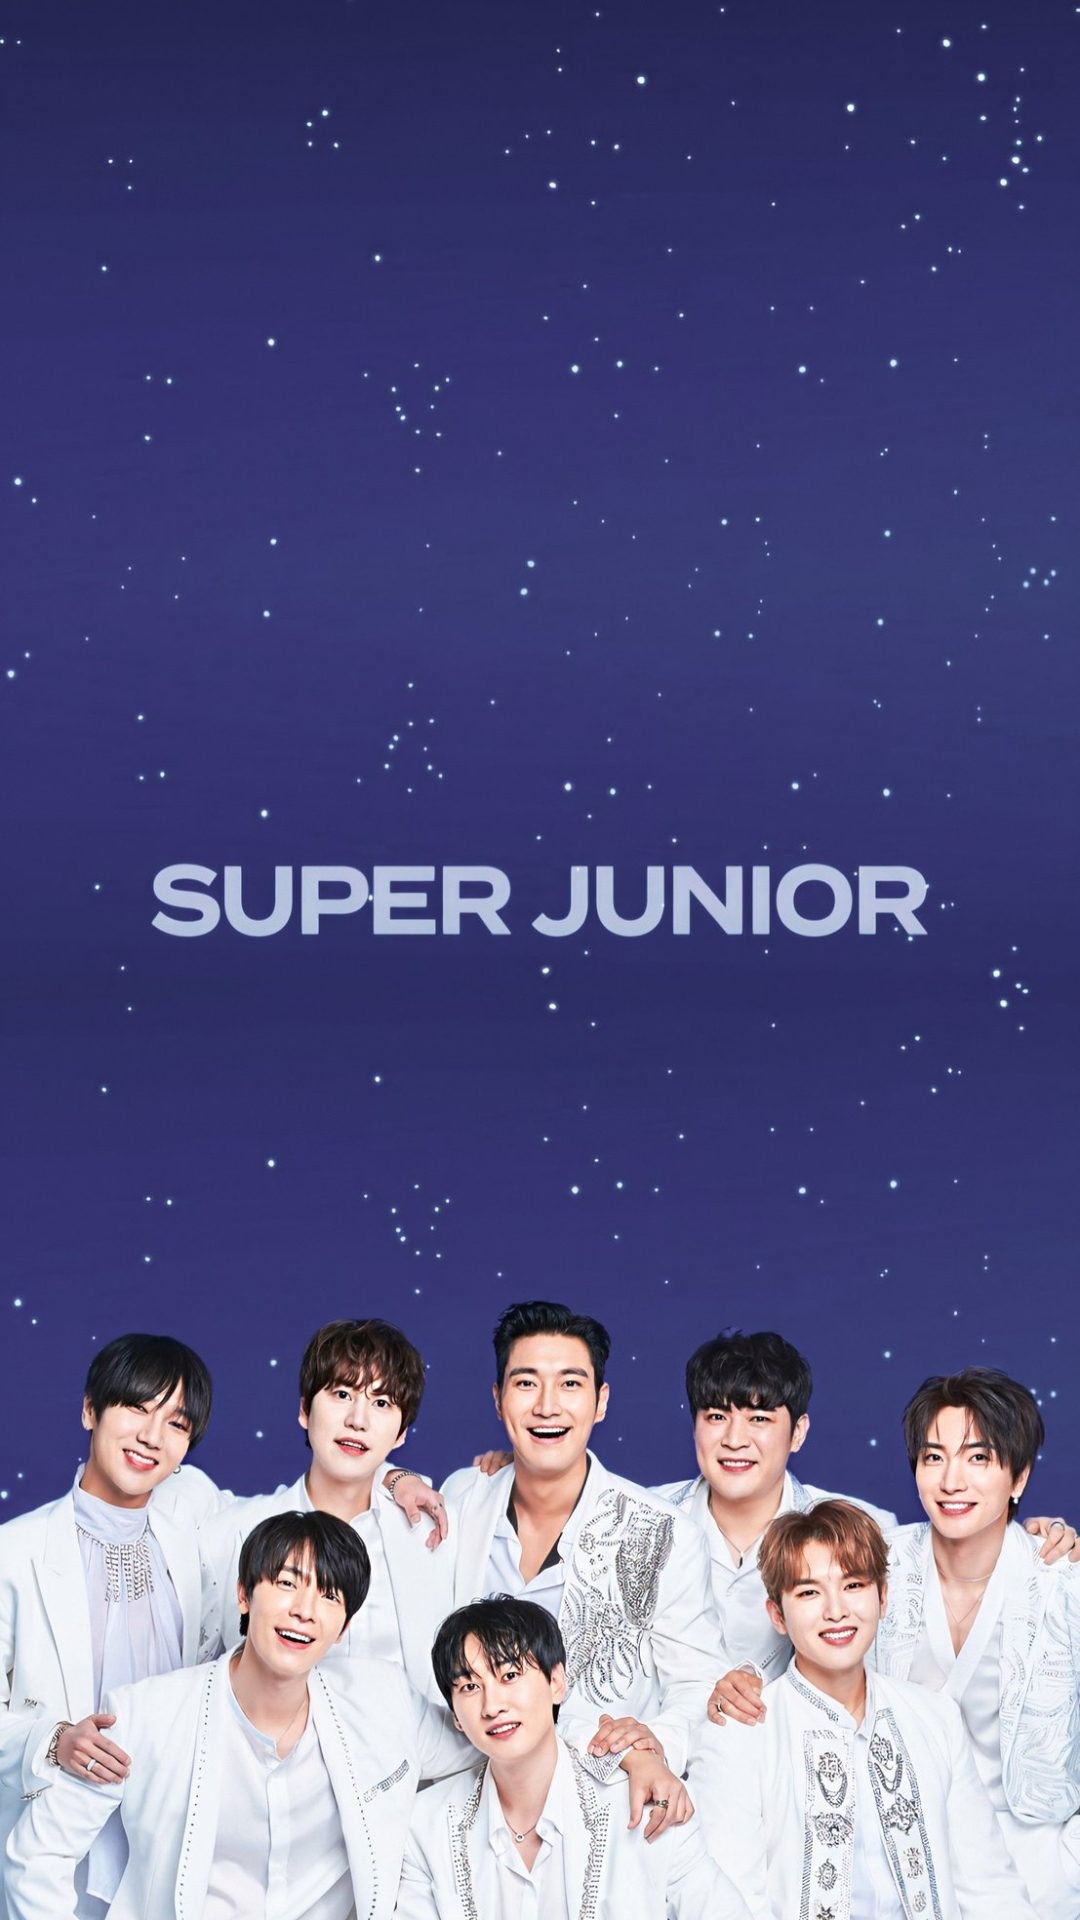 Super Junior Members Wallpaper